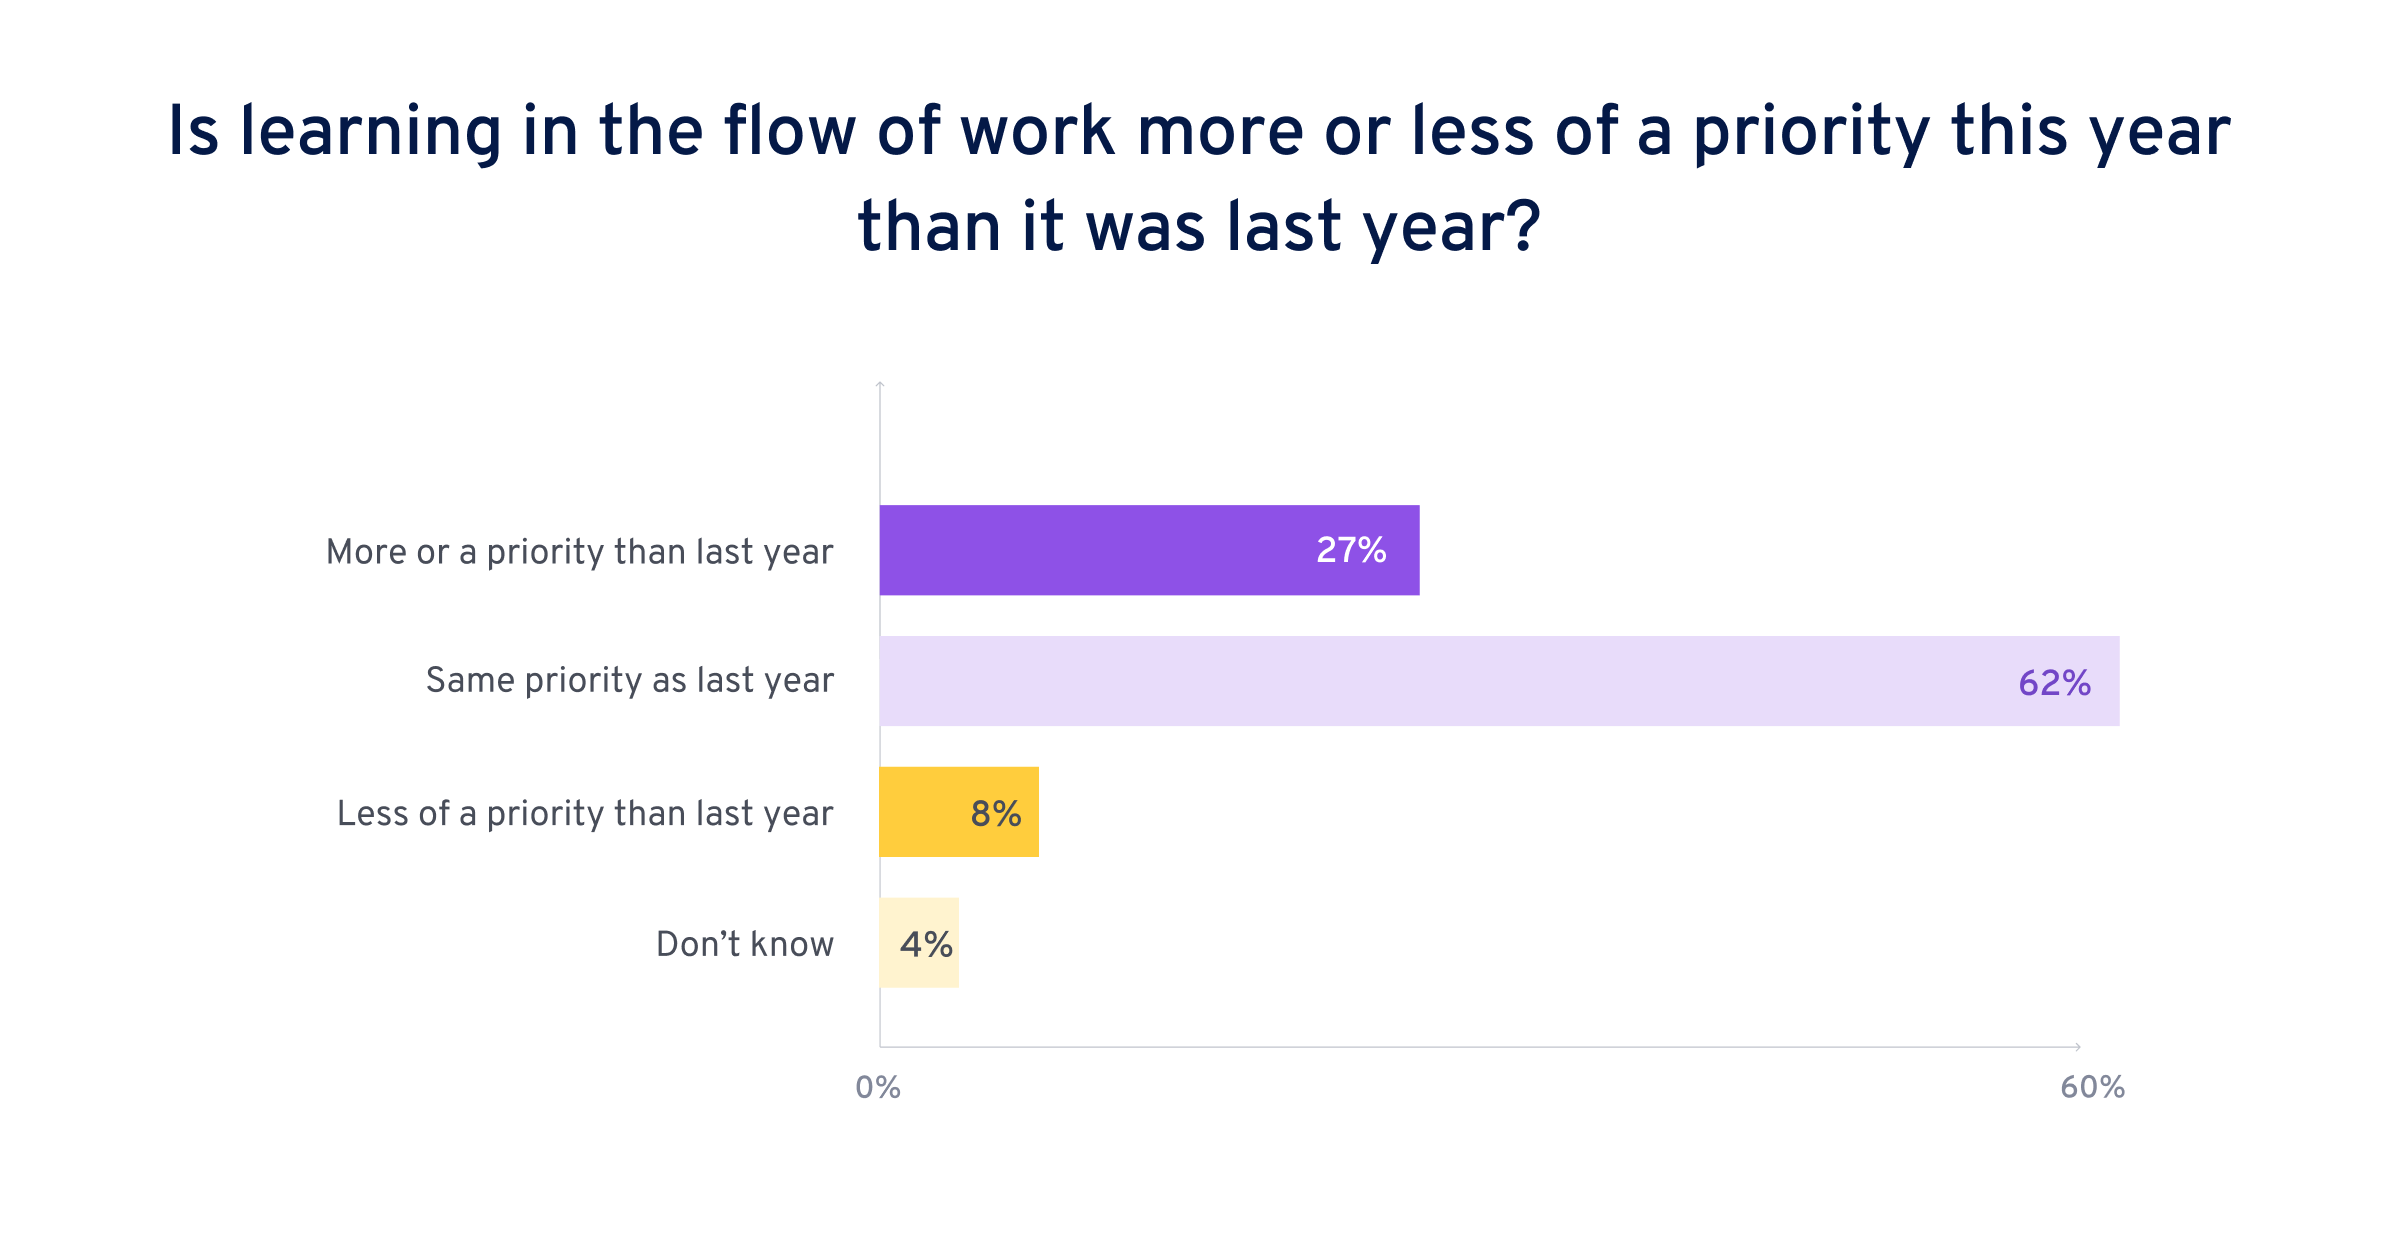 Pour 58 % des personnes interrogées, l’apprentissage en situation de travail est tout autant une priorité que l’année passée.